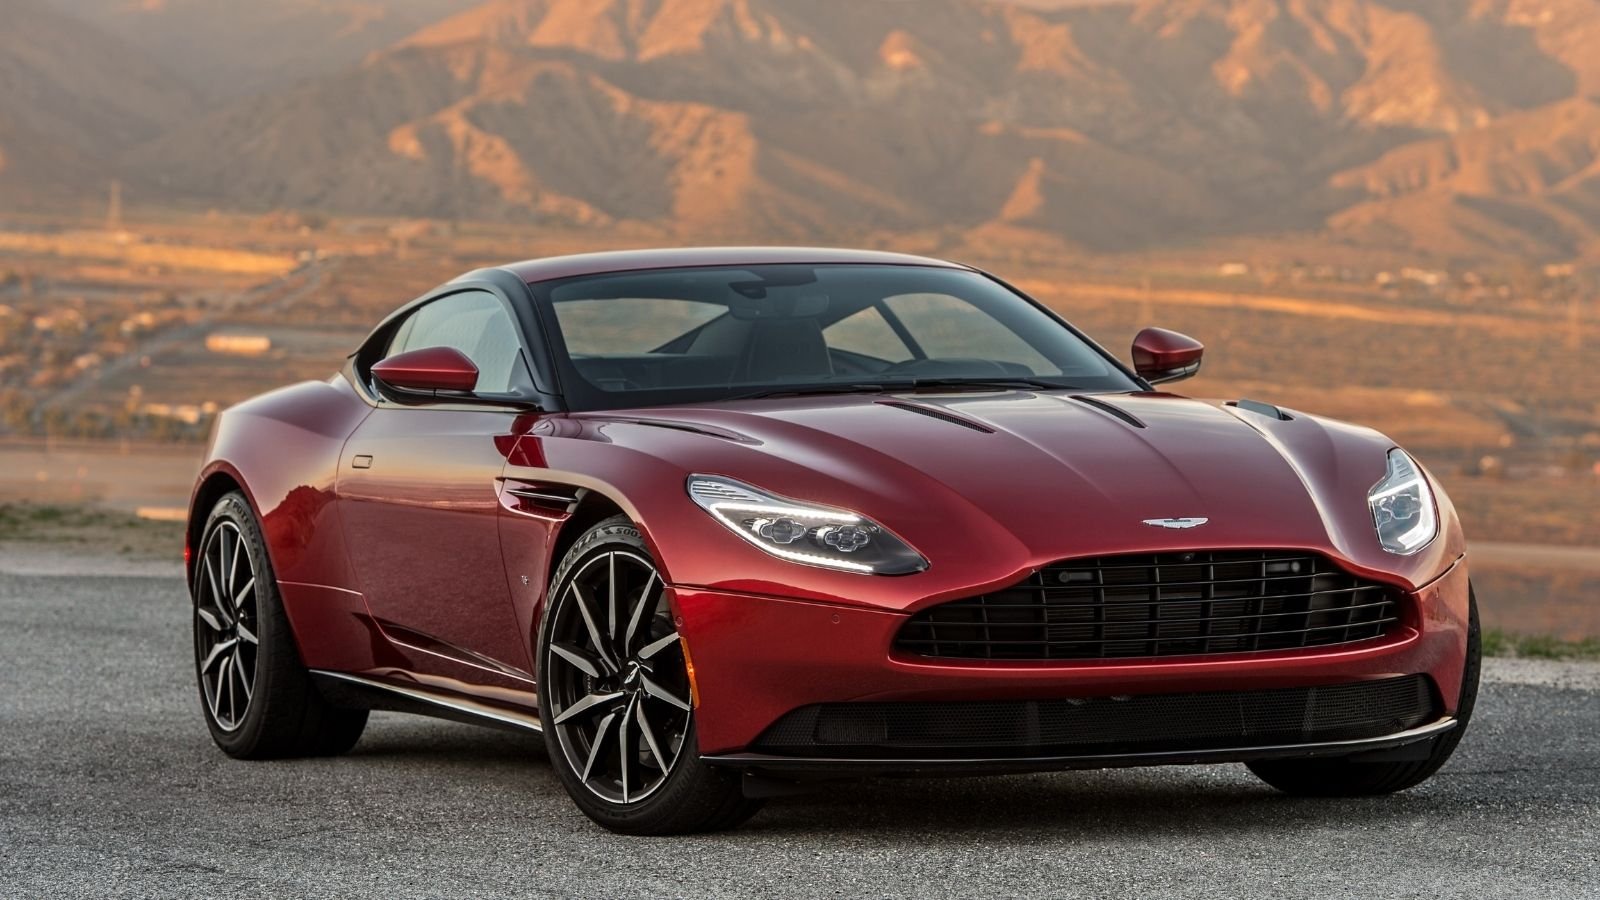 Dünyanın en özel bazı otomobil modellerine imza atan Aston Martin, gelen bilgilere göre ilk elektrikli aracını bir süre ertelemiş olacak. 